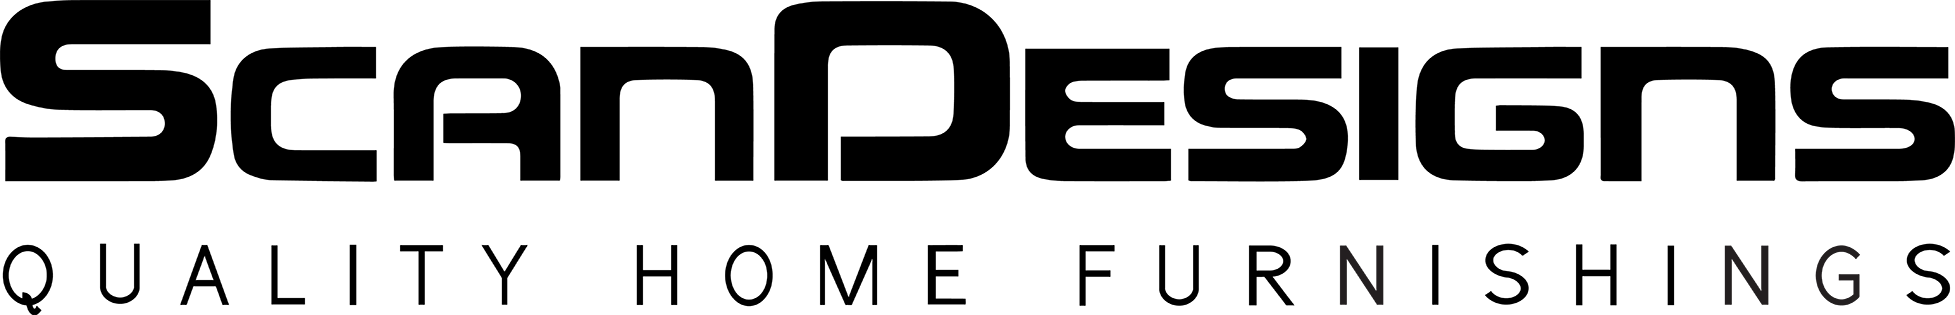 ScanDesigns Large Logo